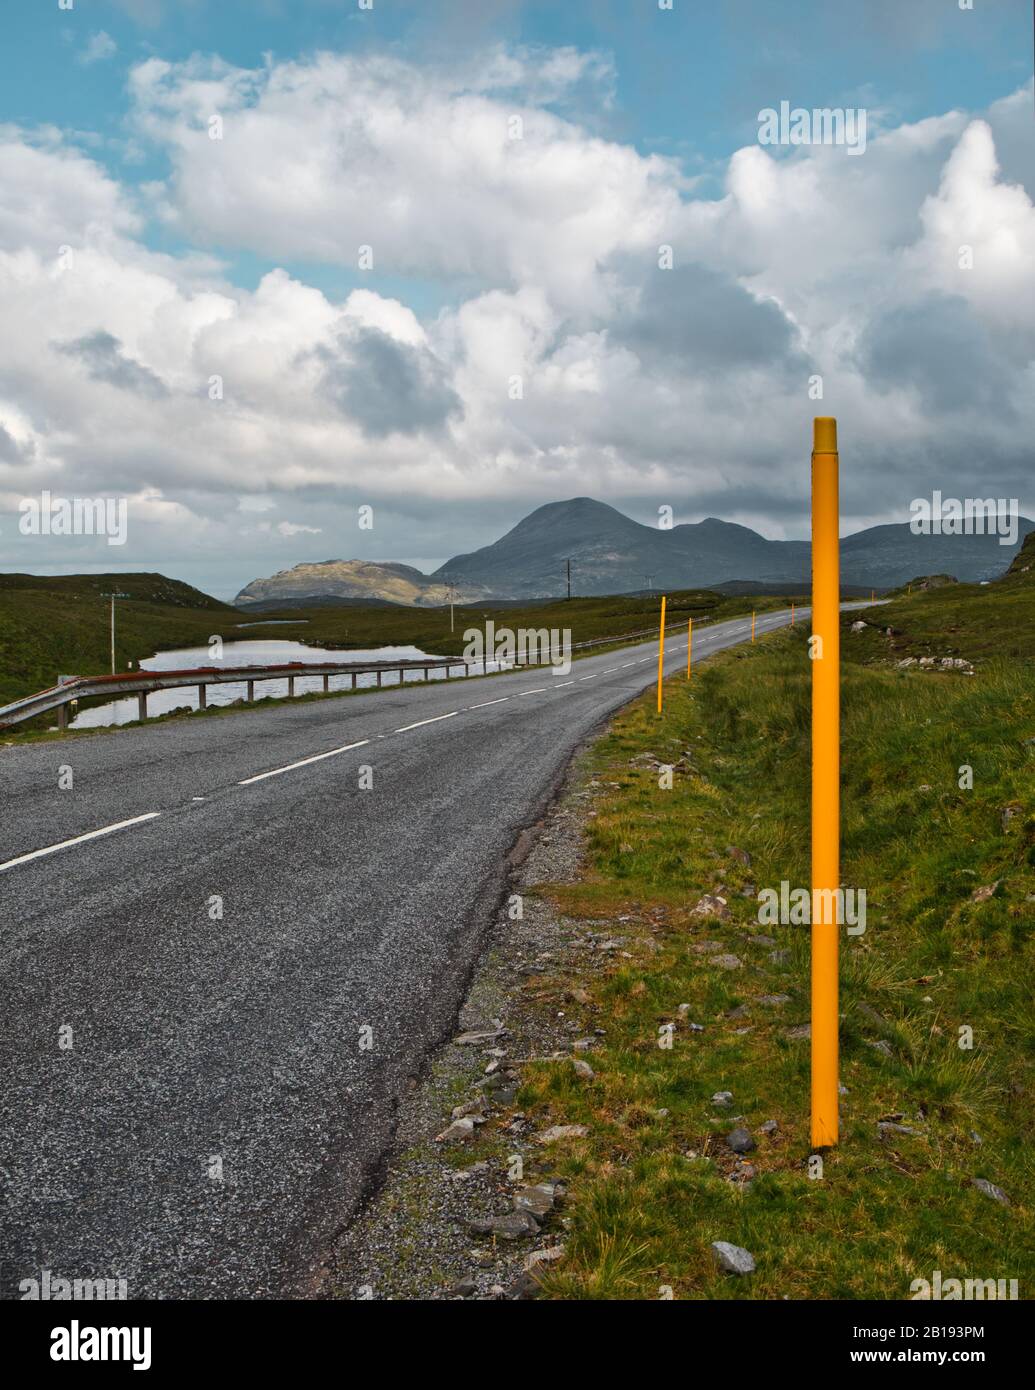 Des bâtons de neige jaunes réfléchissants indiquent les routes le long de la route pour guider les conducteurs, Isle of Lewis et Harris, Outer Hebrides, Écosse Banque D'Images